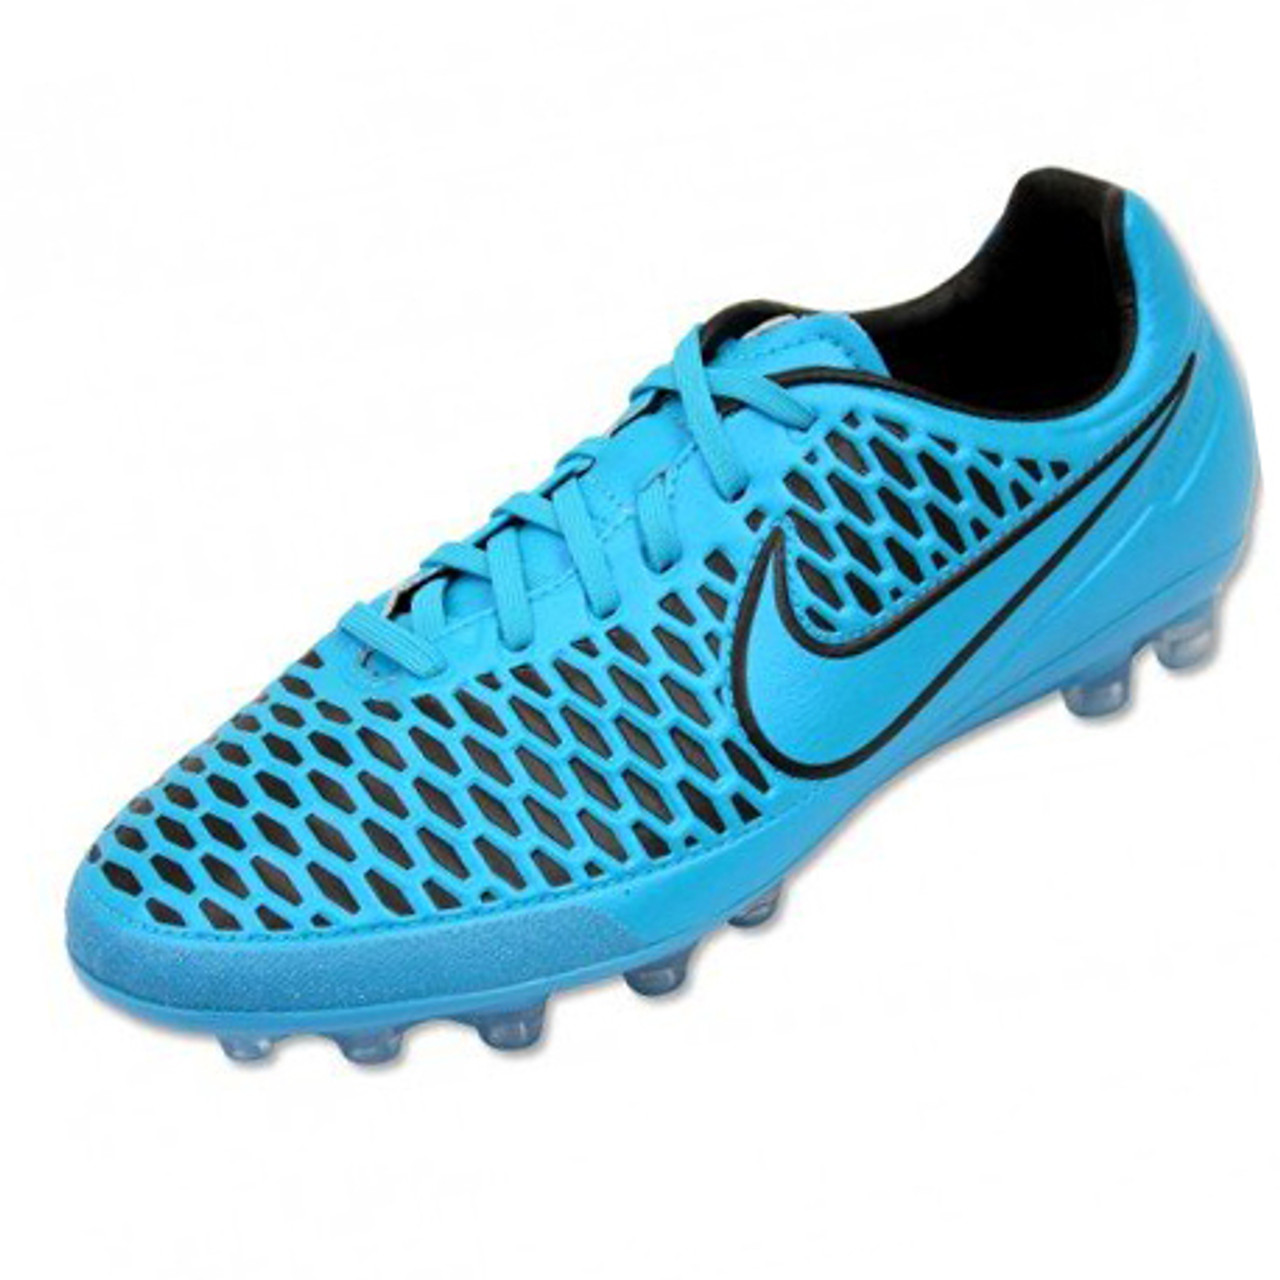 Nike Magista Orden AG - Turquoise Blue/Black (081720) - ohp soccer